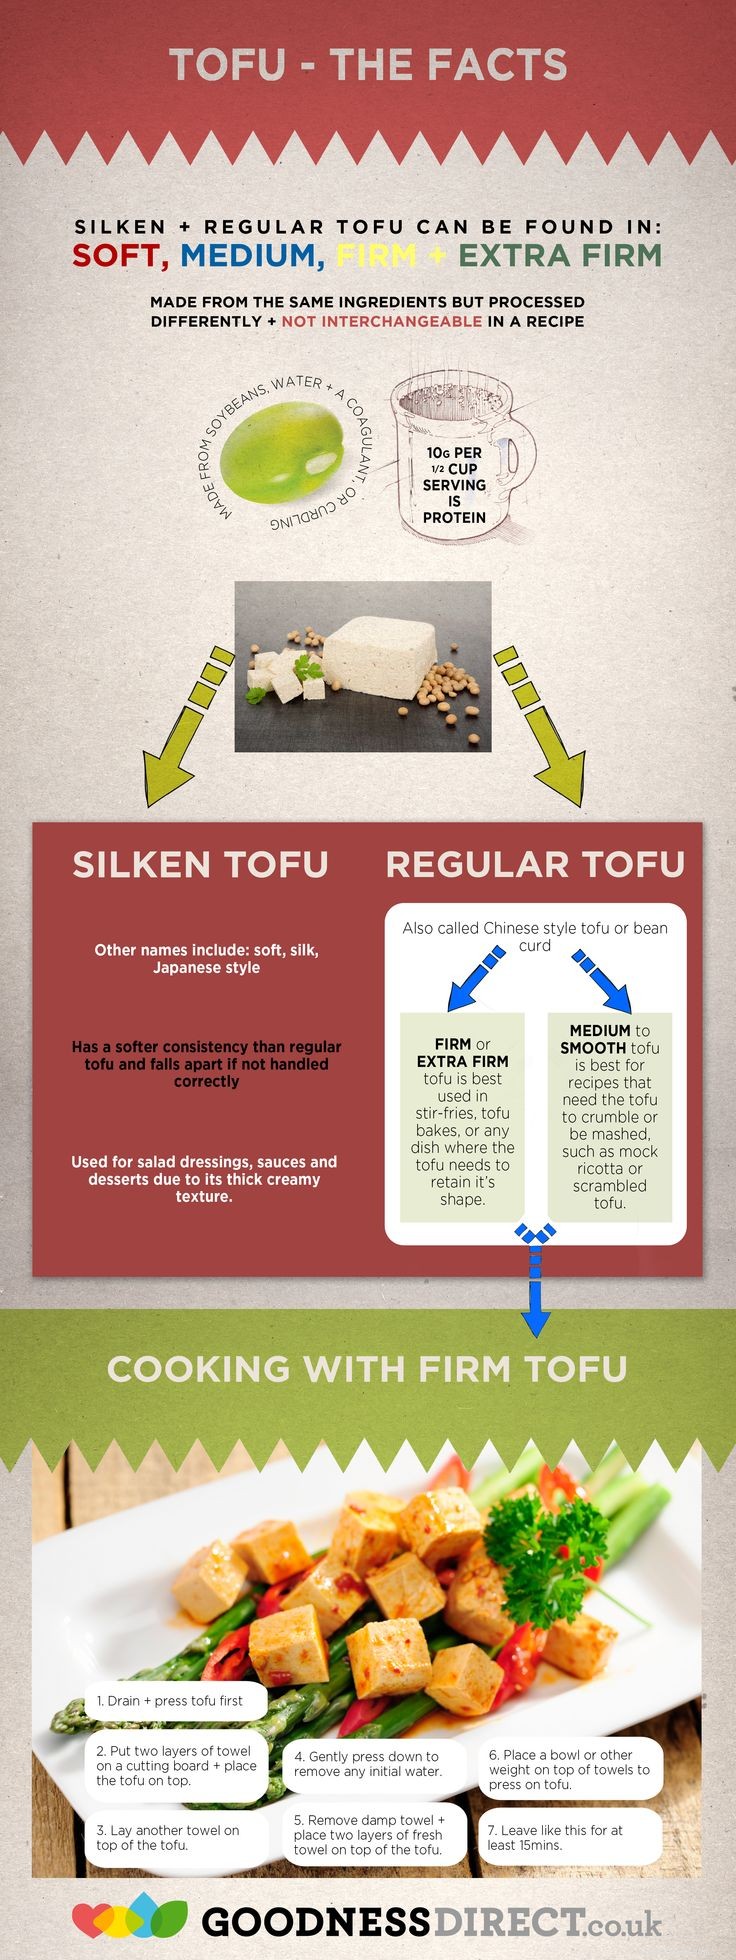 Os cães podem comer tofu? 3 potenciais benefícios e 6 efeitos colaterais